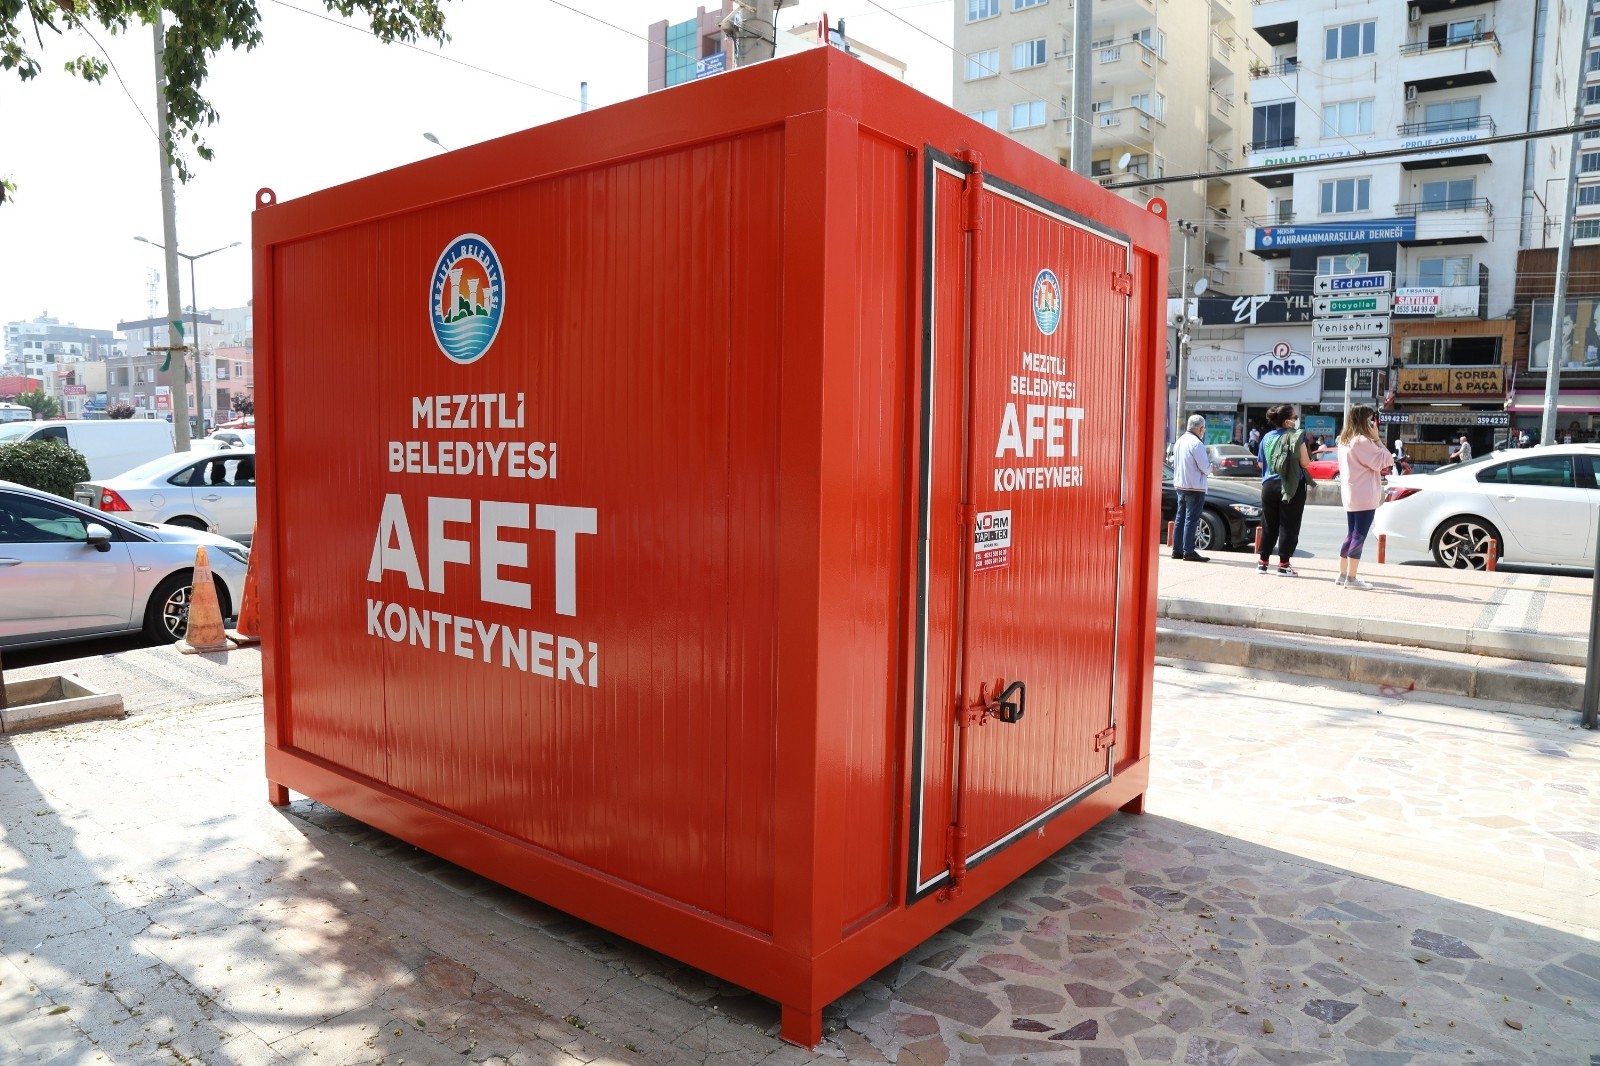 Mersin’in ilk acil durum deprem konteyneri Mezitli’ye yerleştirildi